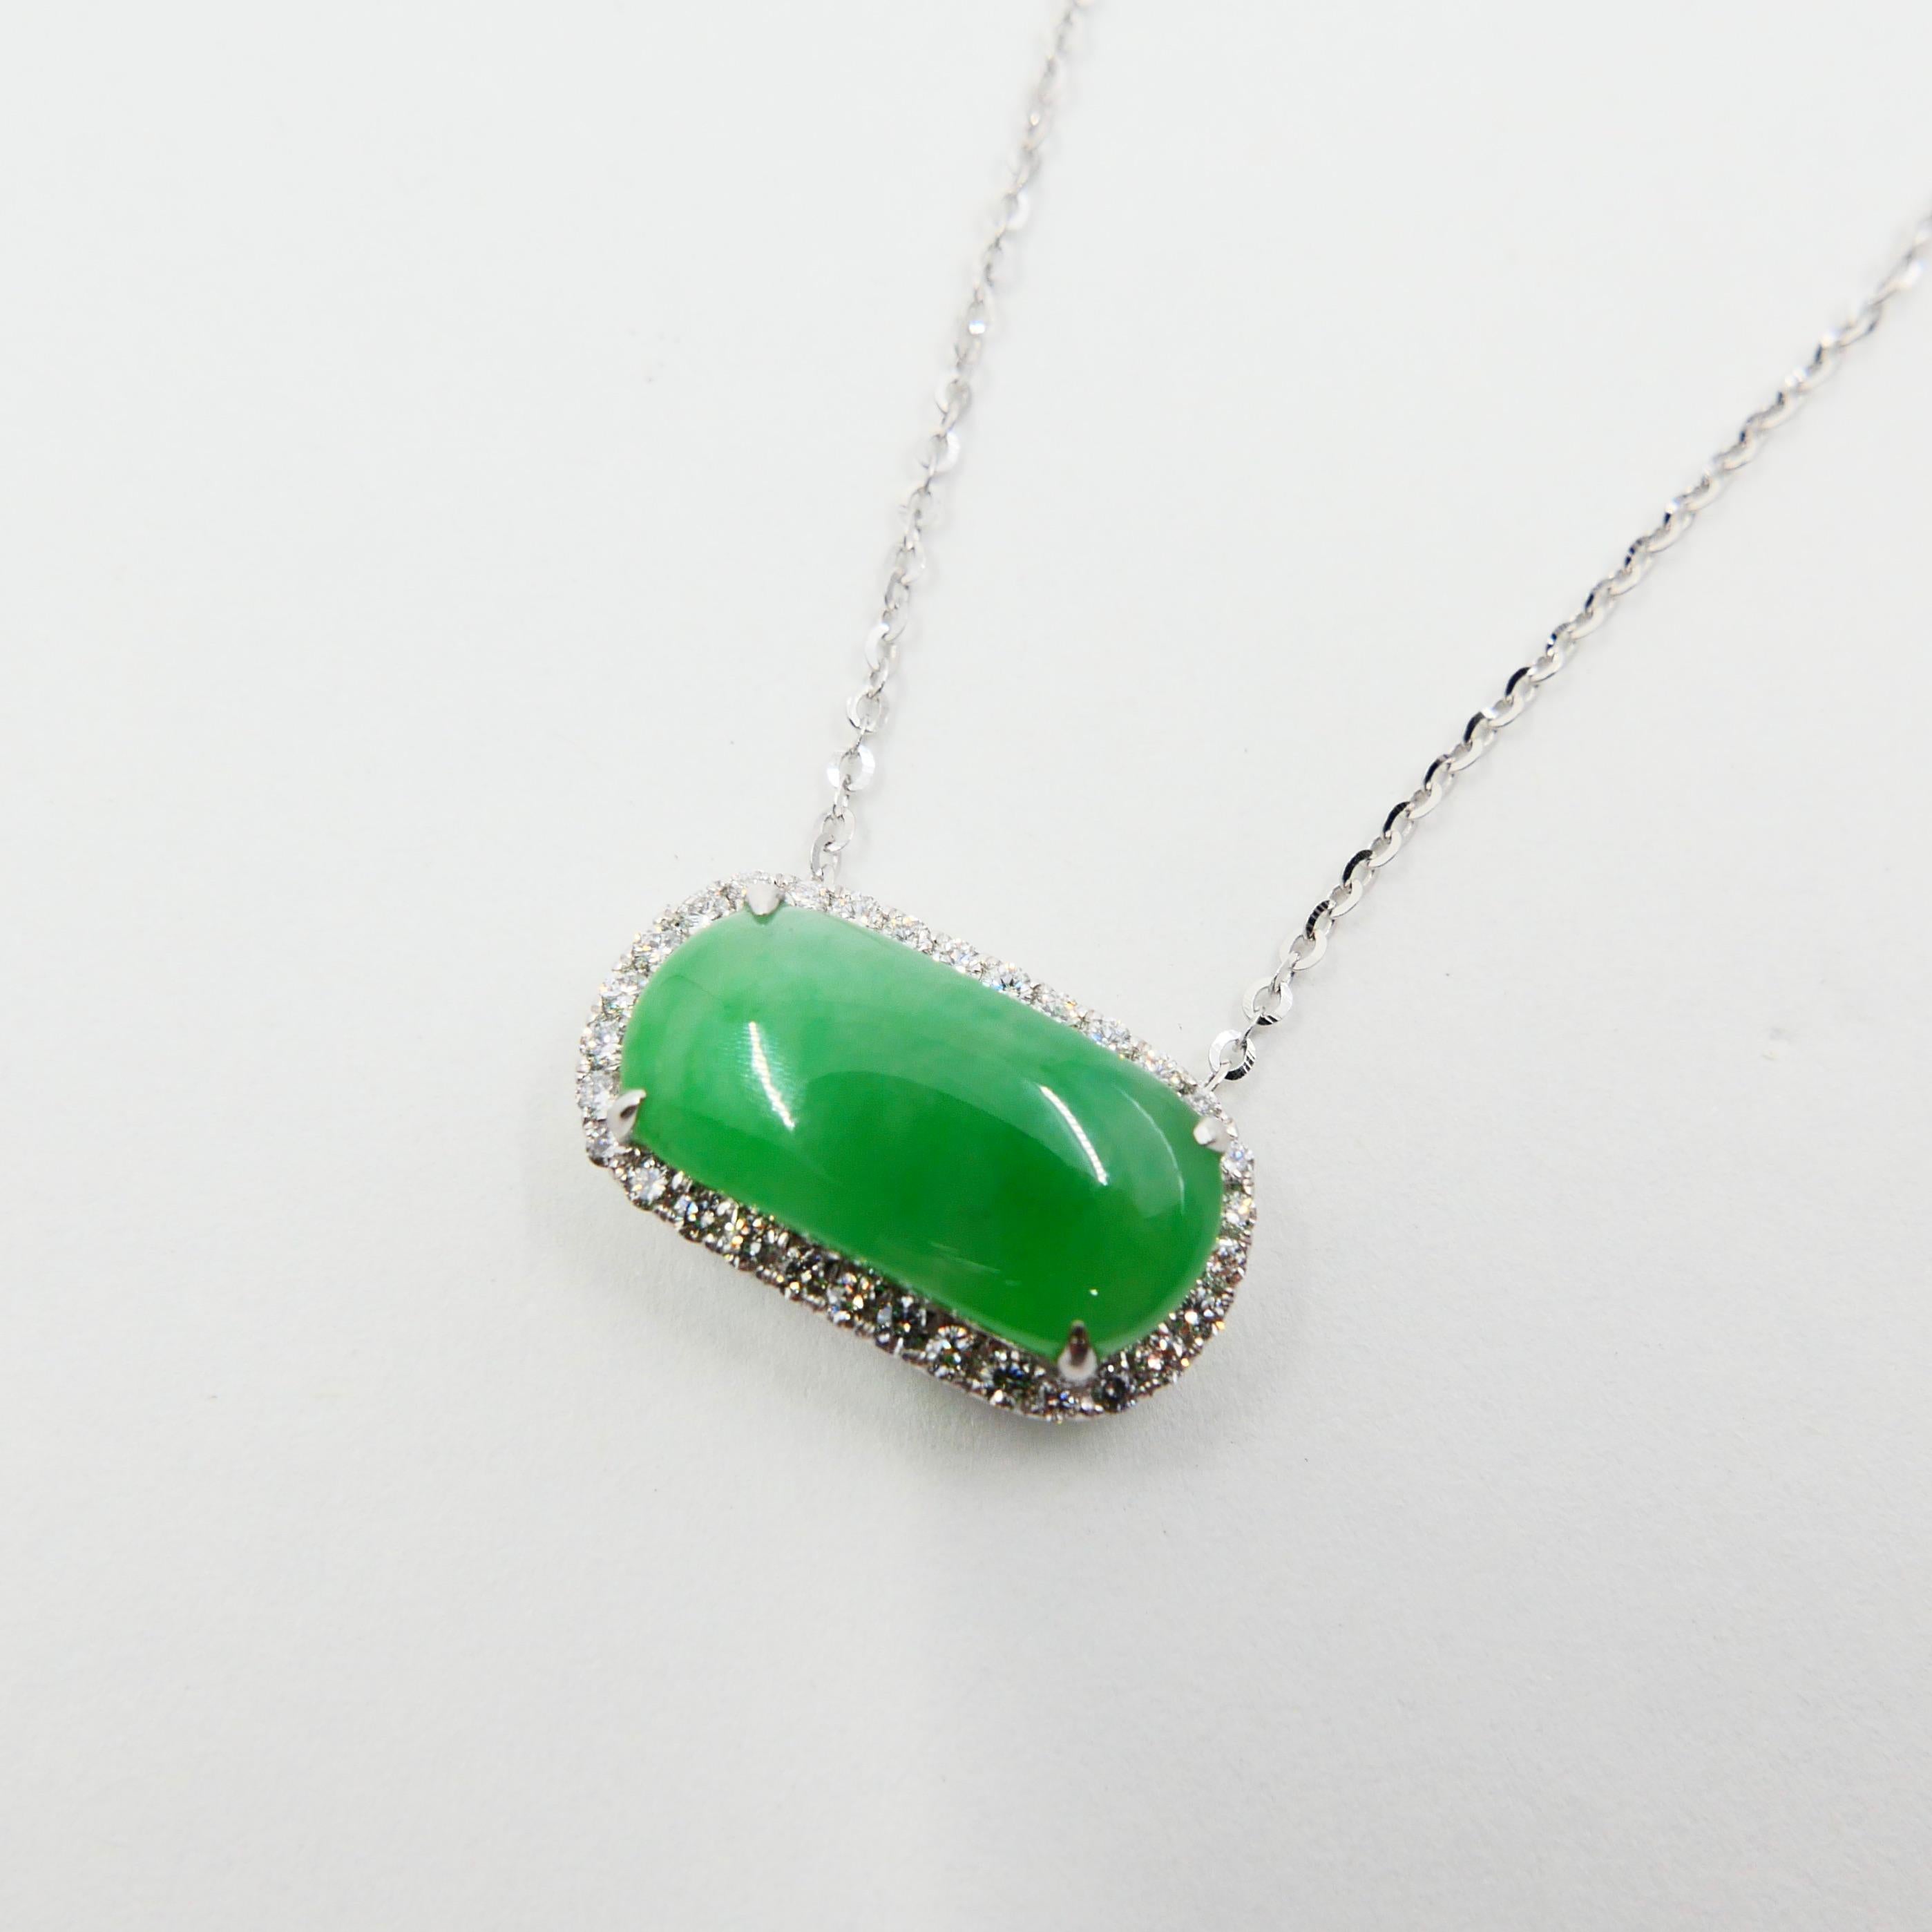 Certified Type A Jadeite Jade Diamond Pendant Drop Necklace, Apple Green Color For Sale 7